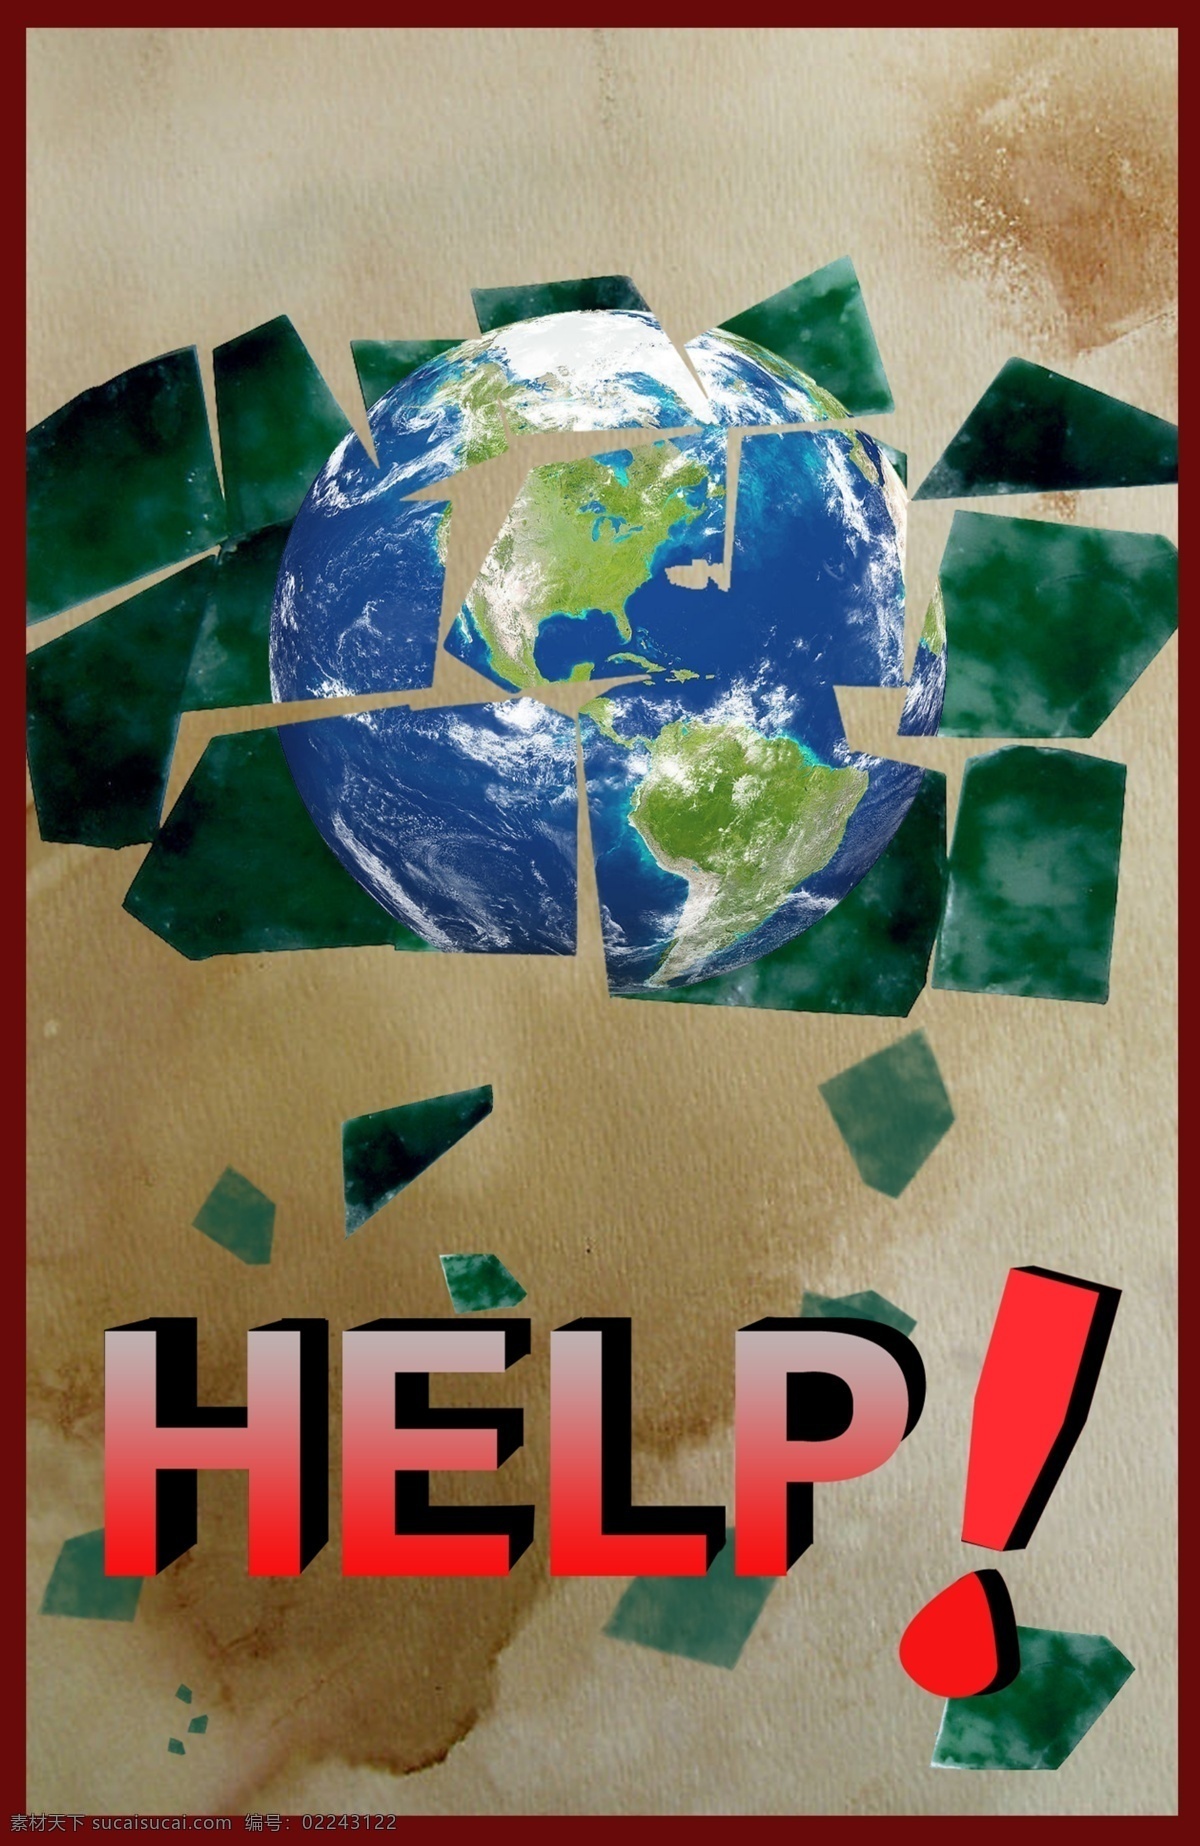 help 爆炸 地球 公益海报 广告设计模板 碎片 拯救地球 拯救 瓦片 残毁 分裂 呼唤 地球公益 源文件 环保公益海报